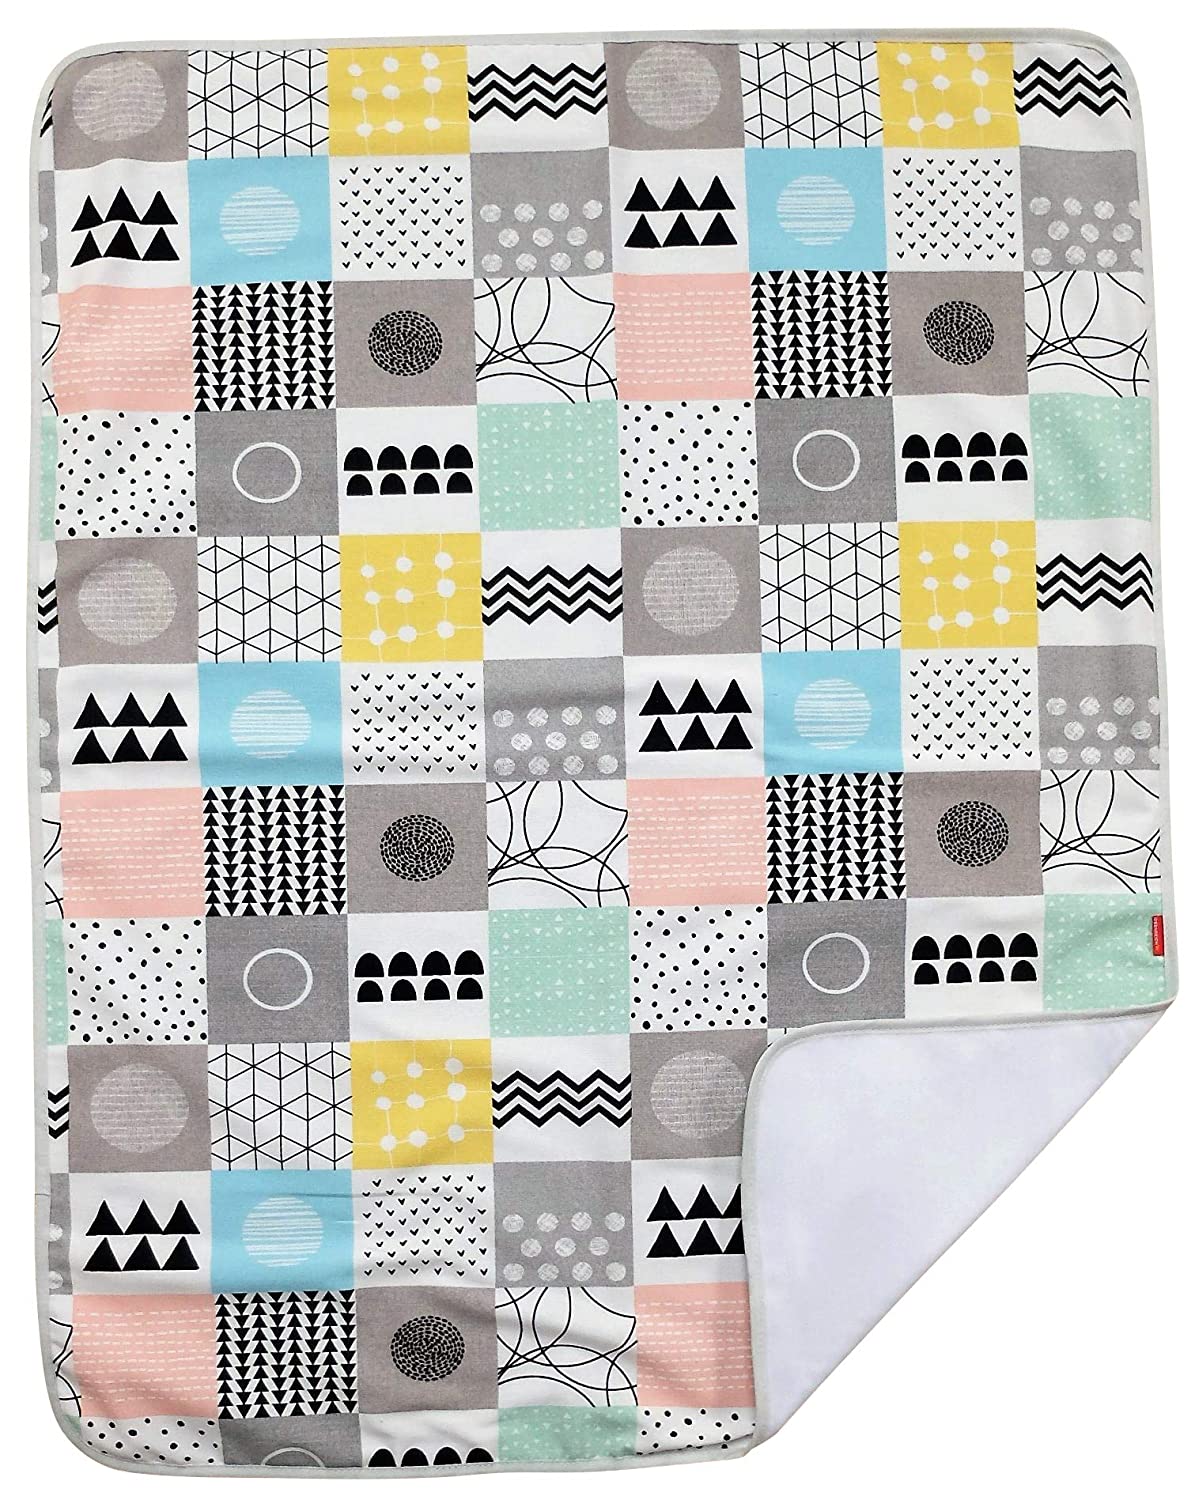 Ideenreich 2565 Ideenreich 2565 Baby Blanket Squares 70 x 90 cm Multi-Coloured